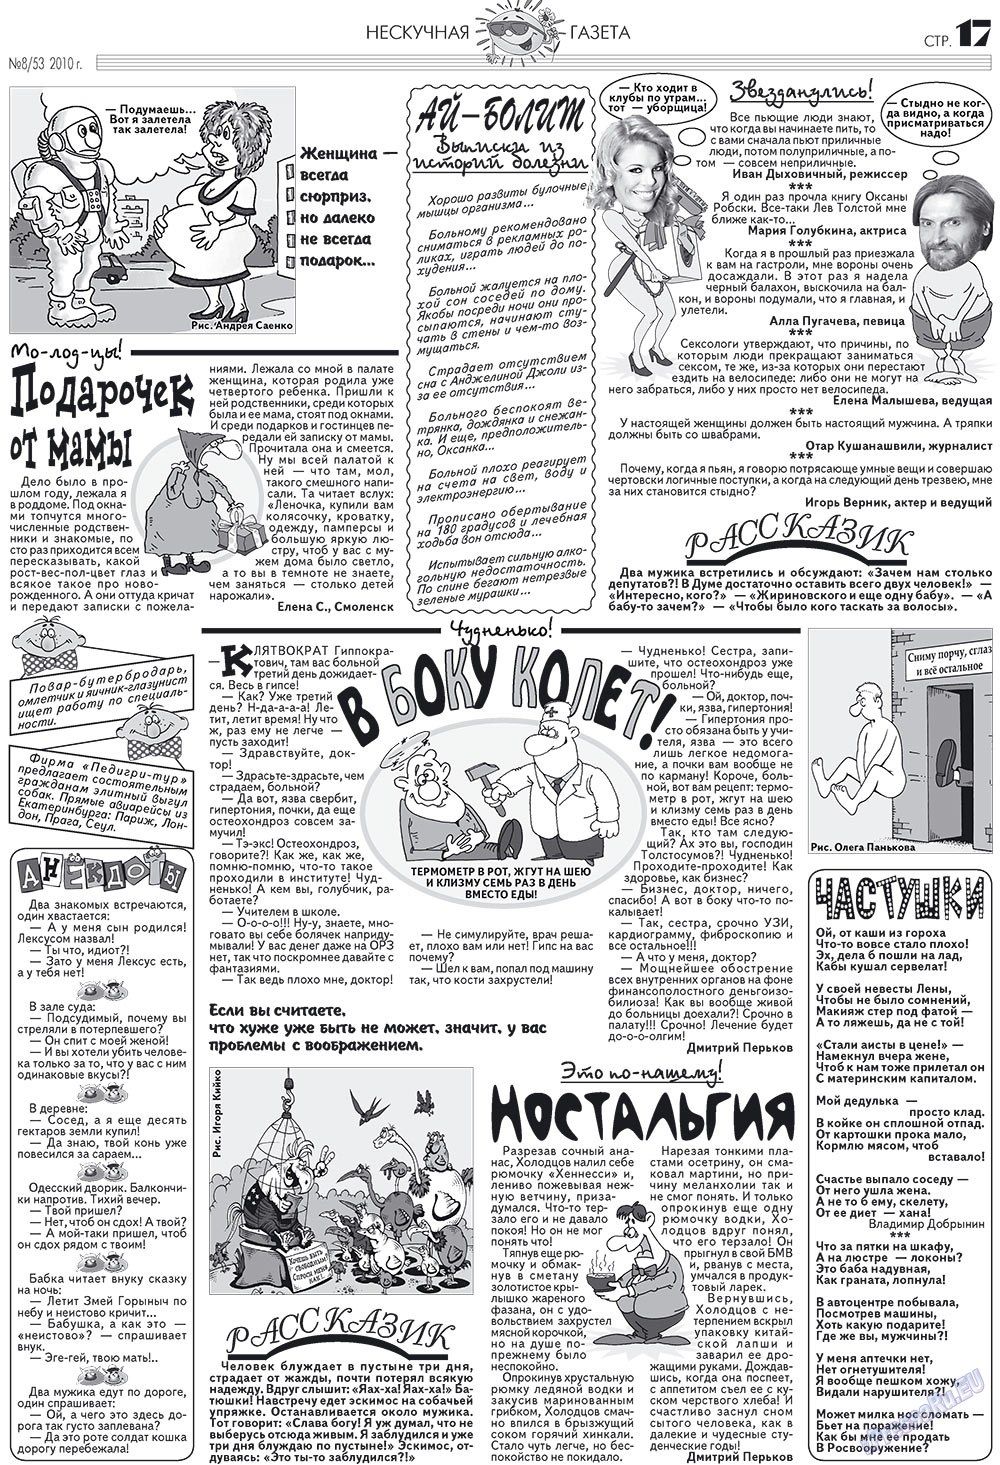 Нескучная газета, журнал. 2010 №8 стр.17